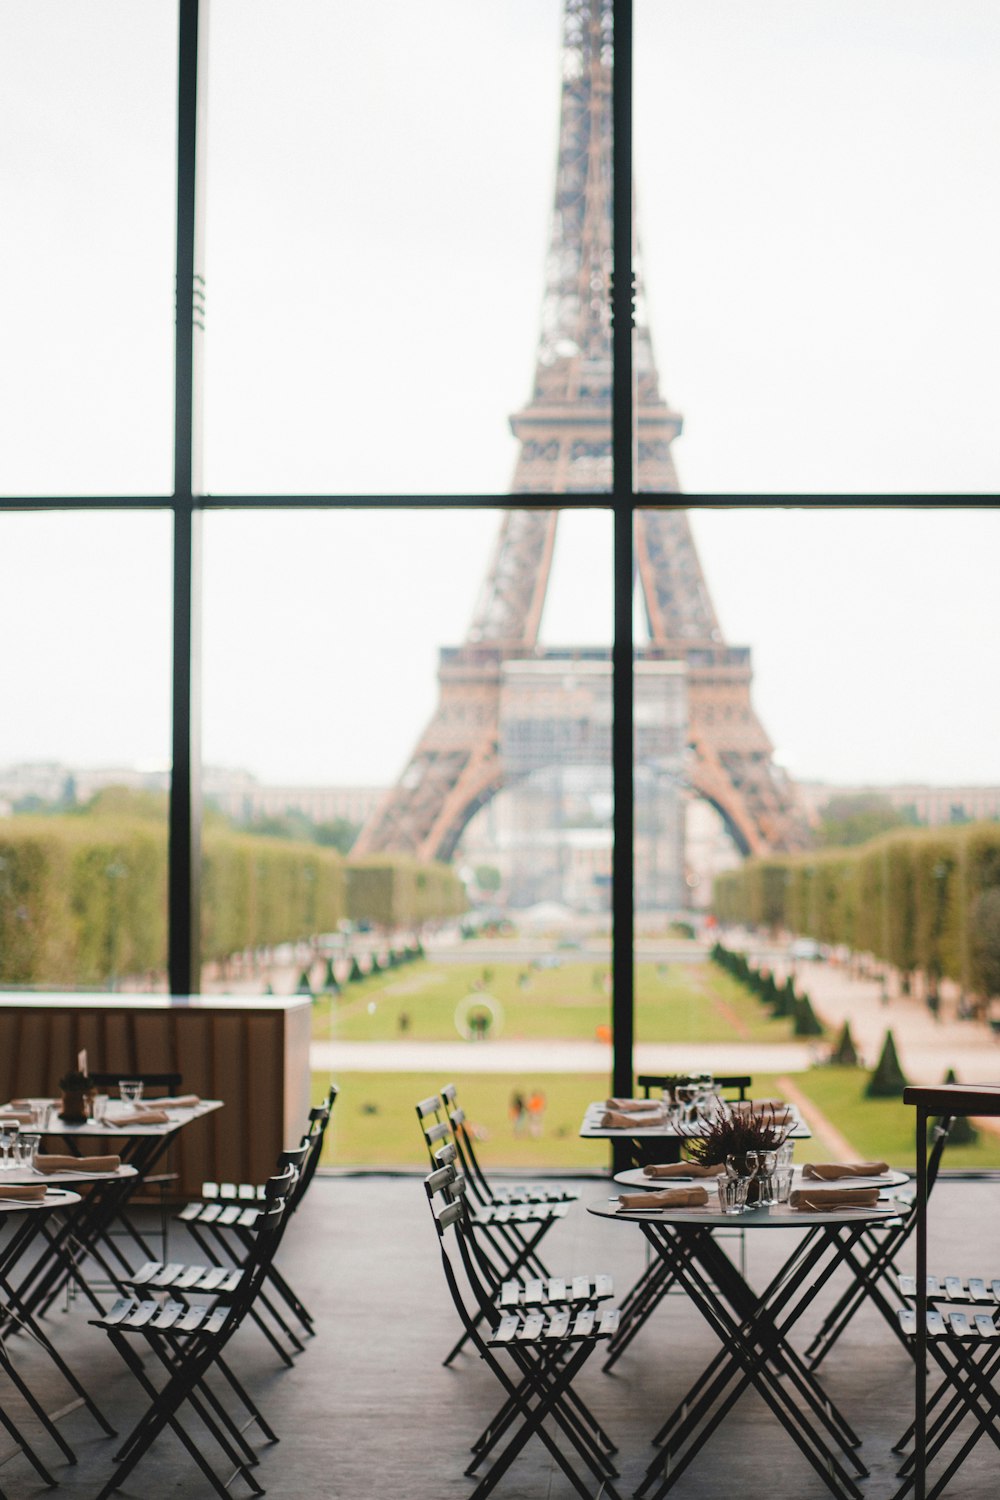 昼間のフランス・パリのエッフェル塔